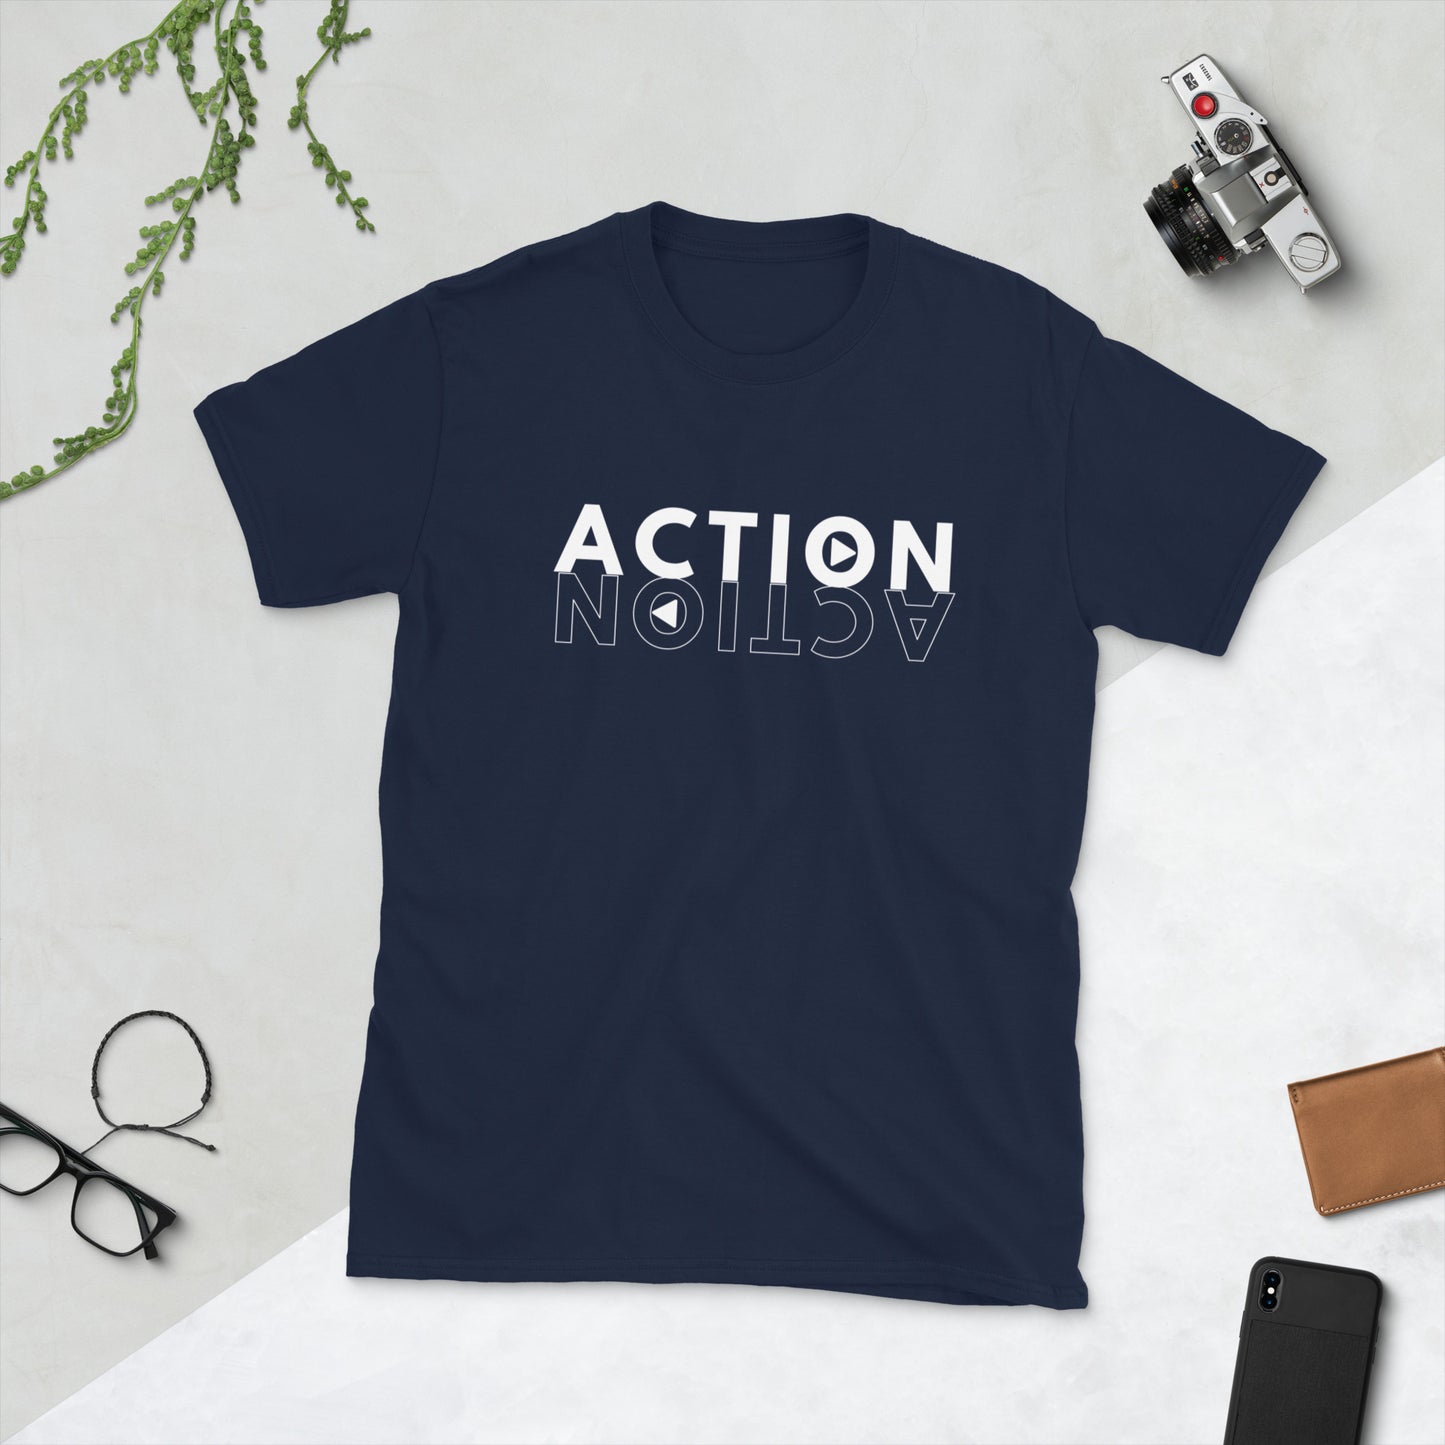 Action Short-Sleeve Unisex T-Shirt, Motivational Shirt, Do Something, Take Action